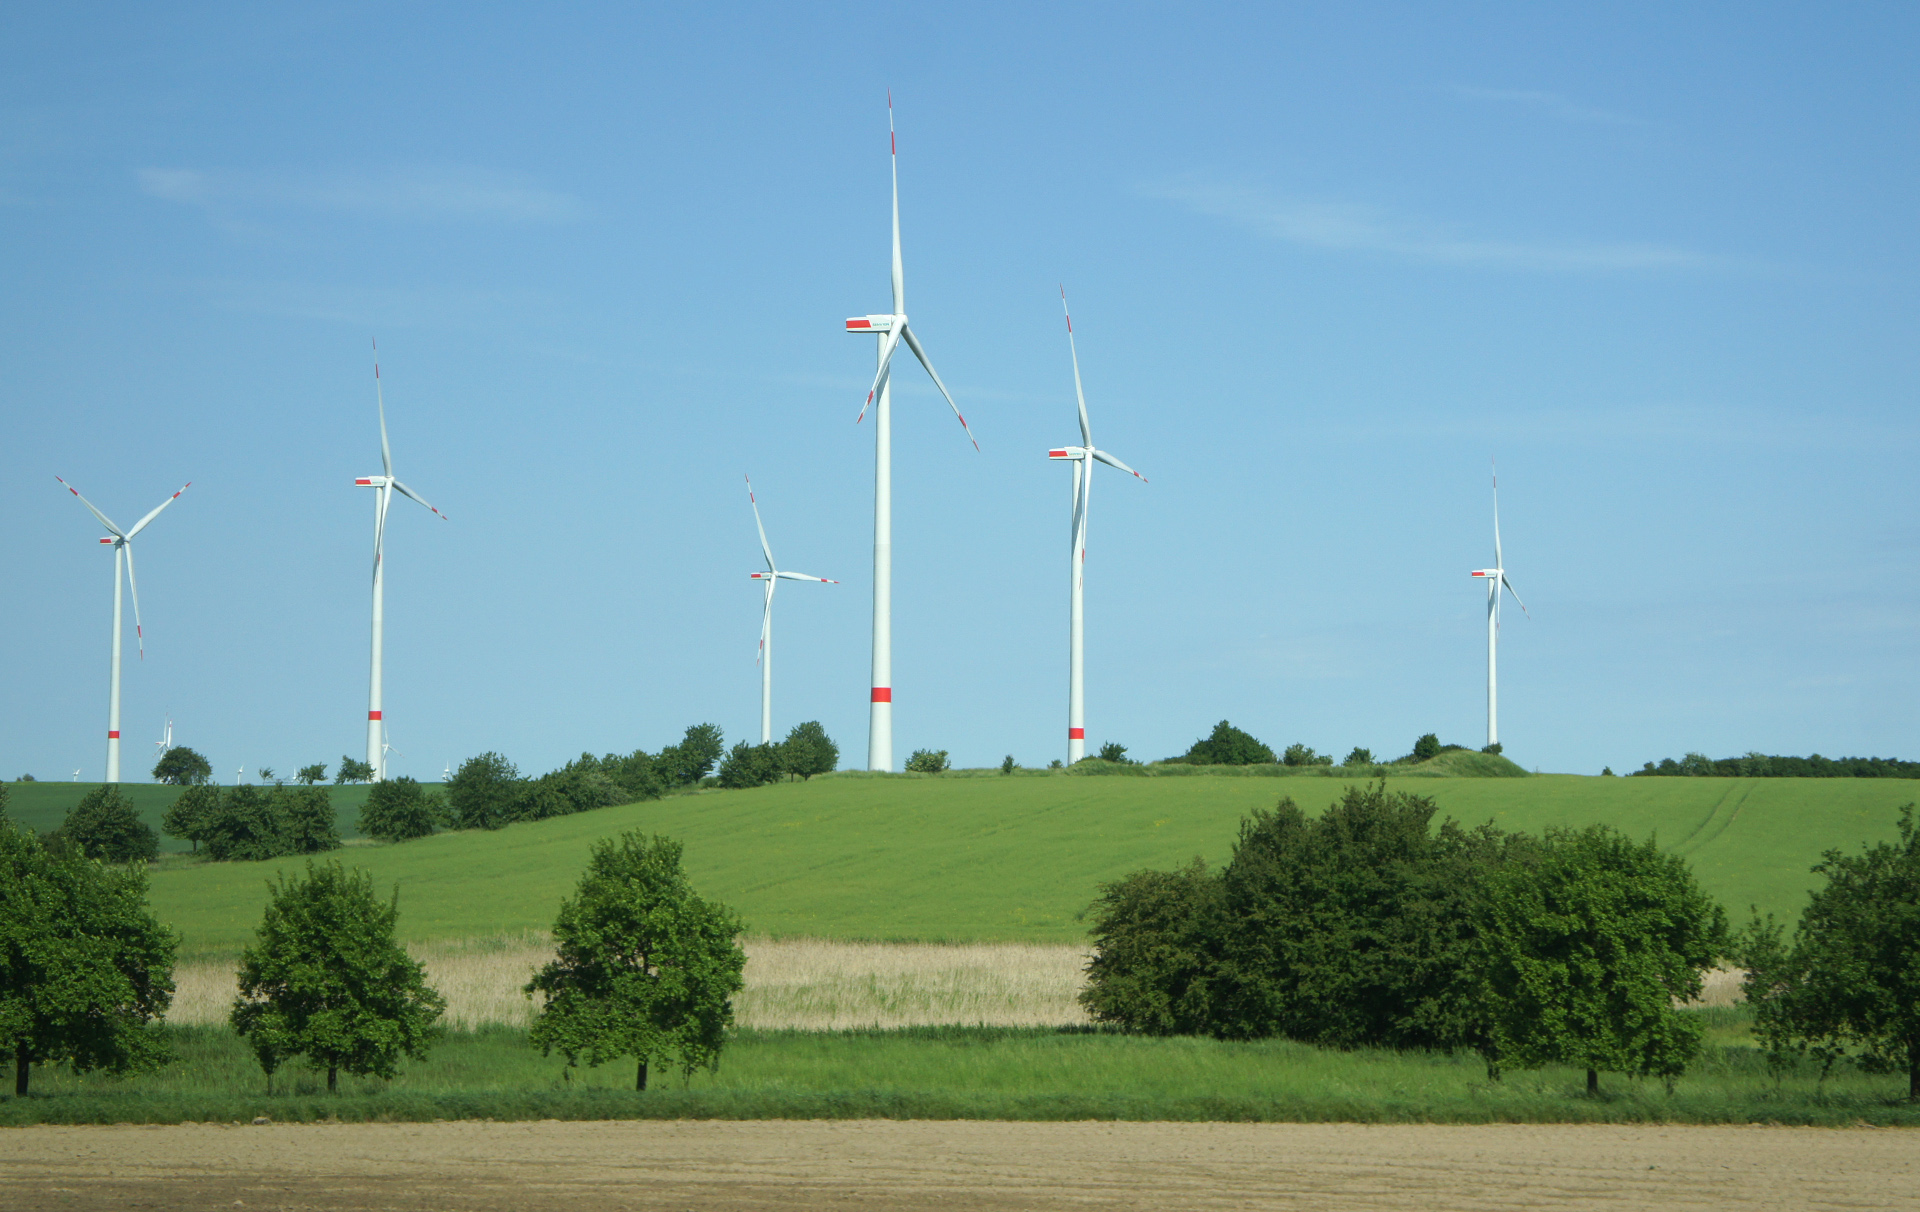 Foto: mehrere Windräder in der grünen Landschaft